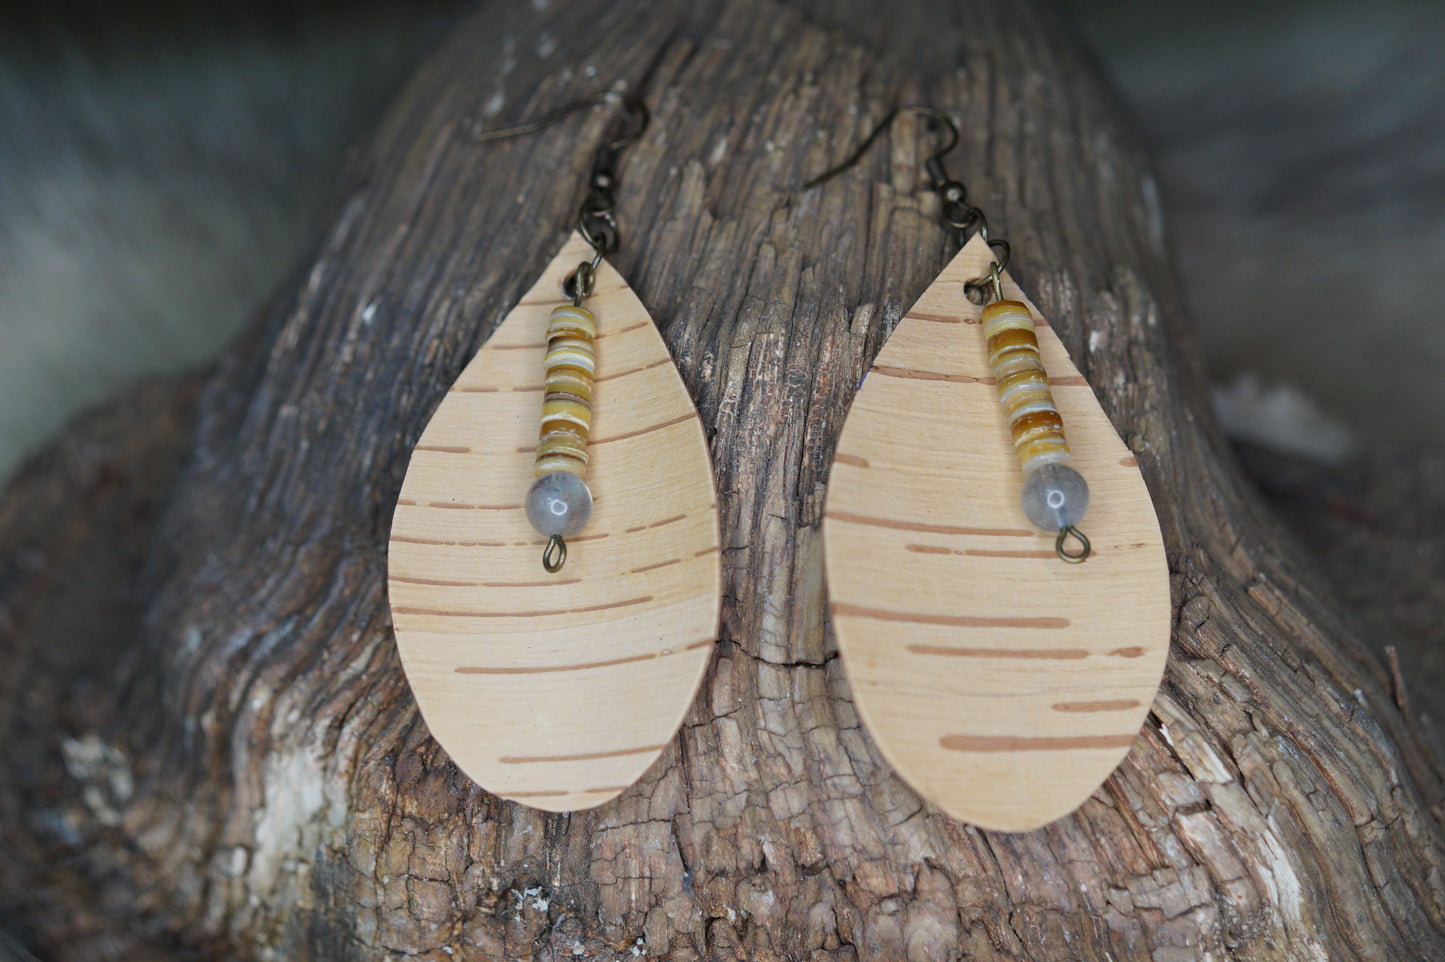 Birch bark teardrop earrings